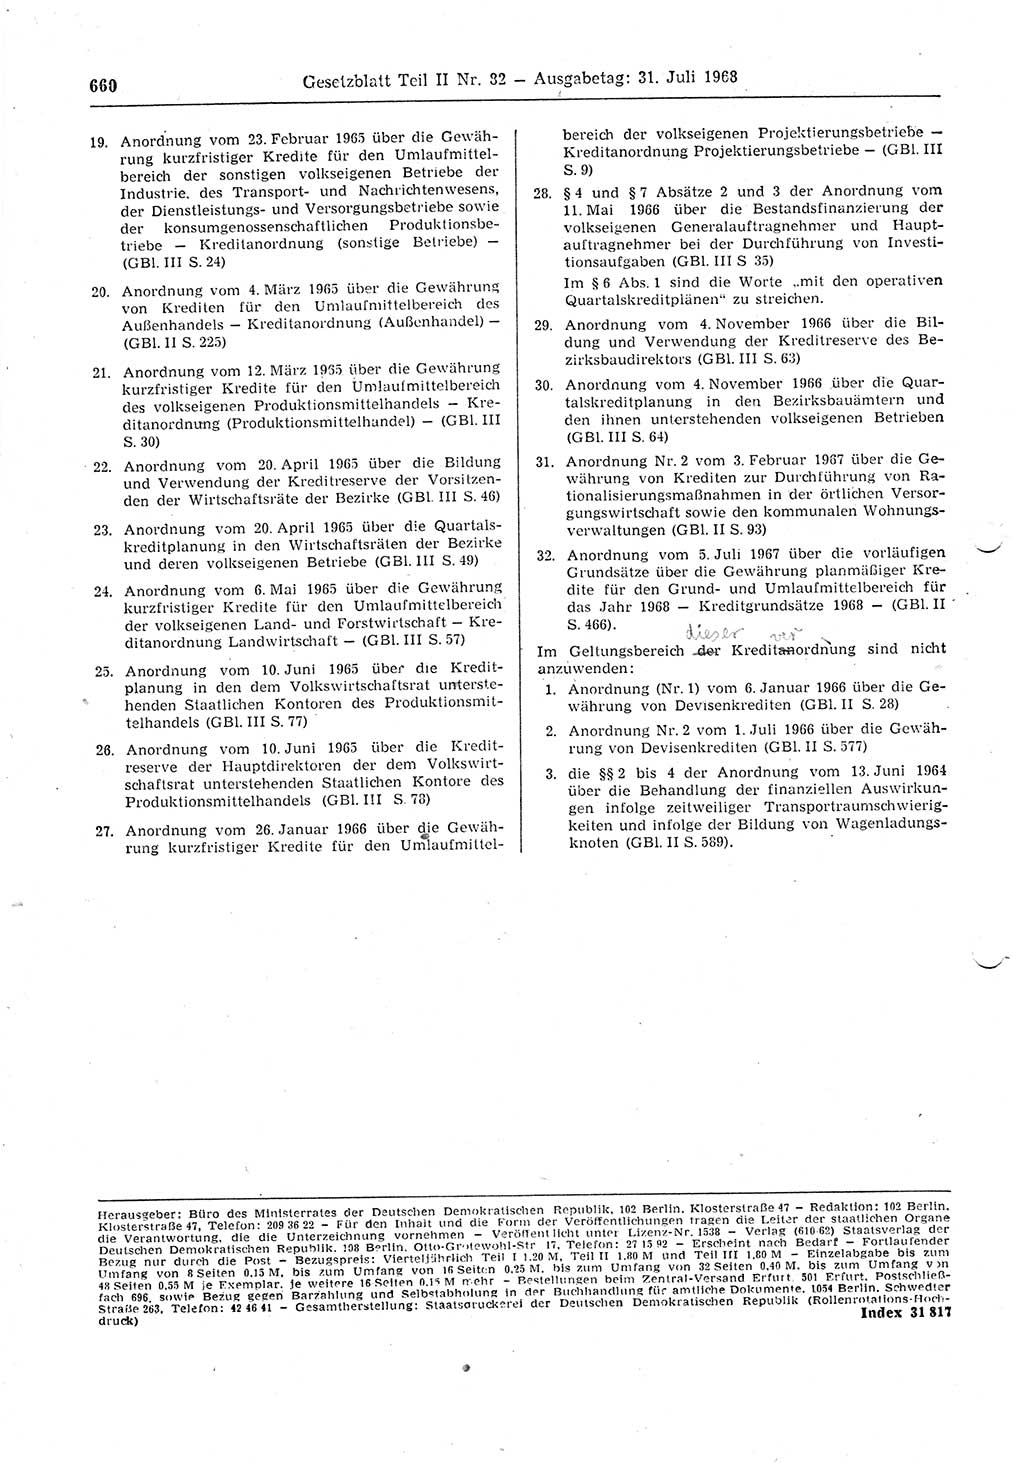 Gesetzblatt (GBl.) der Deutschen Demokratischen Republik (DDR) Teil ⅠⅠ 1968, Seite 660 (GBl. DDR ⅠⅠ 1968, S. 660)